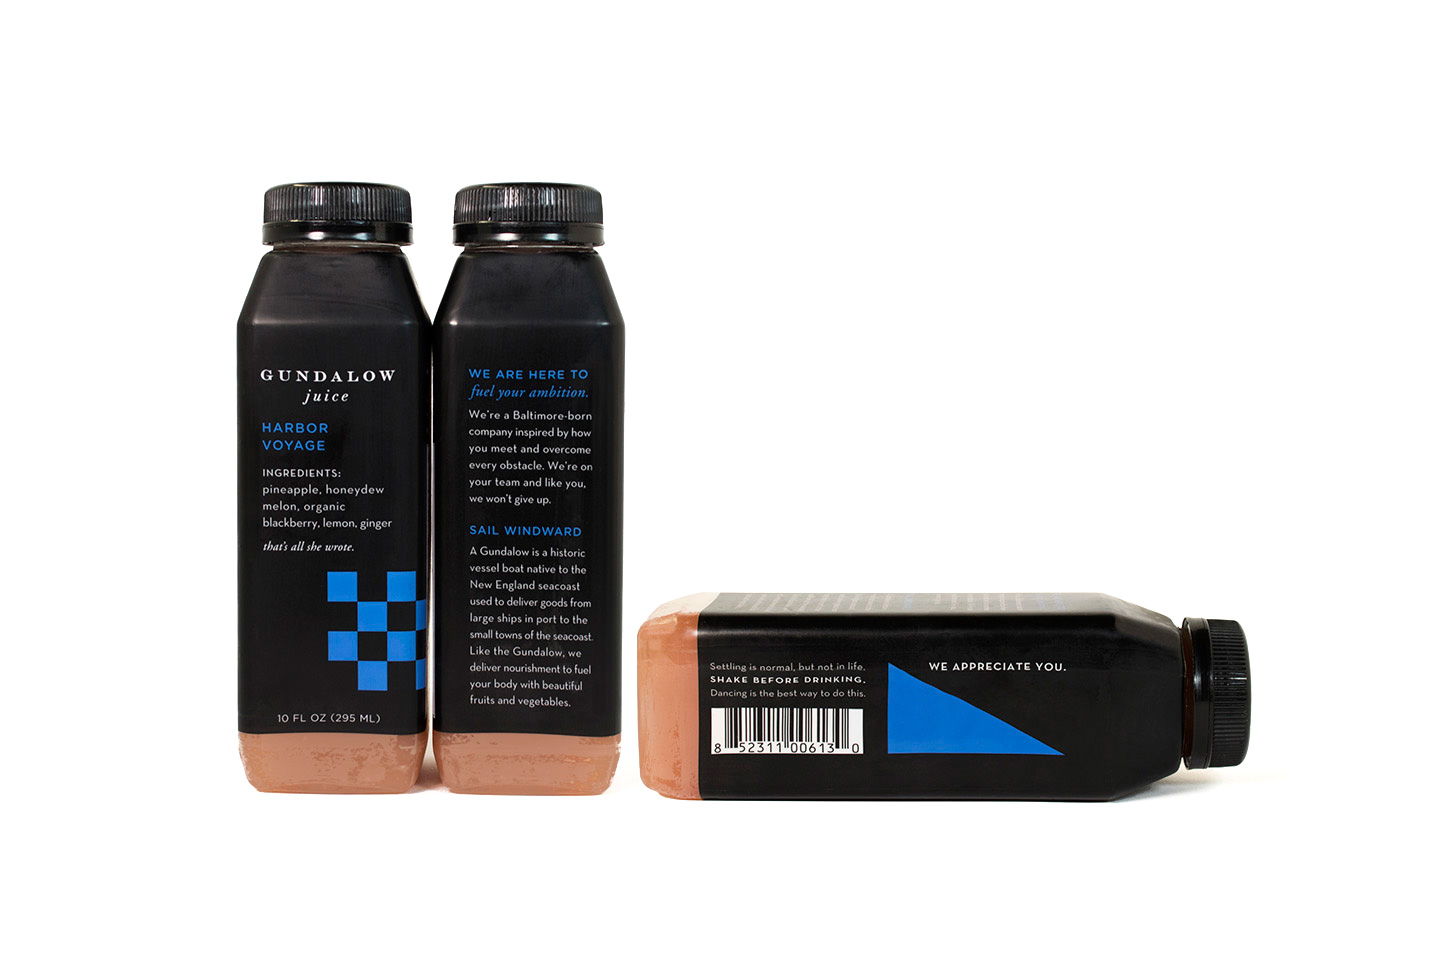 Gundalow Juice: Bottle Package Design for Harbor Voyage